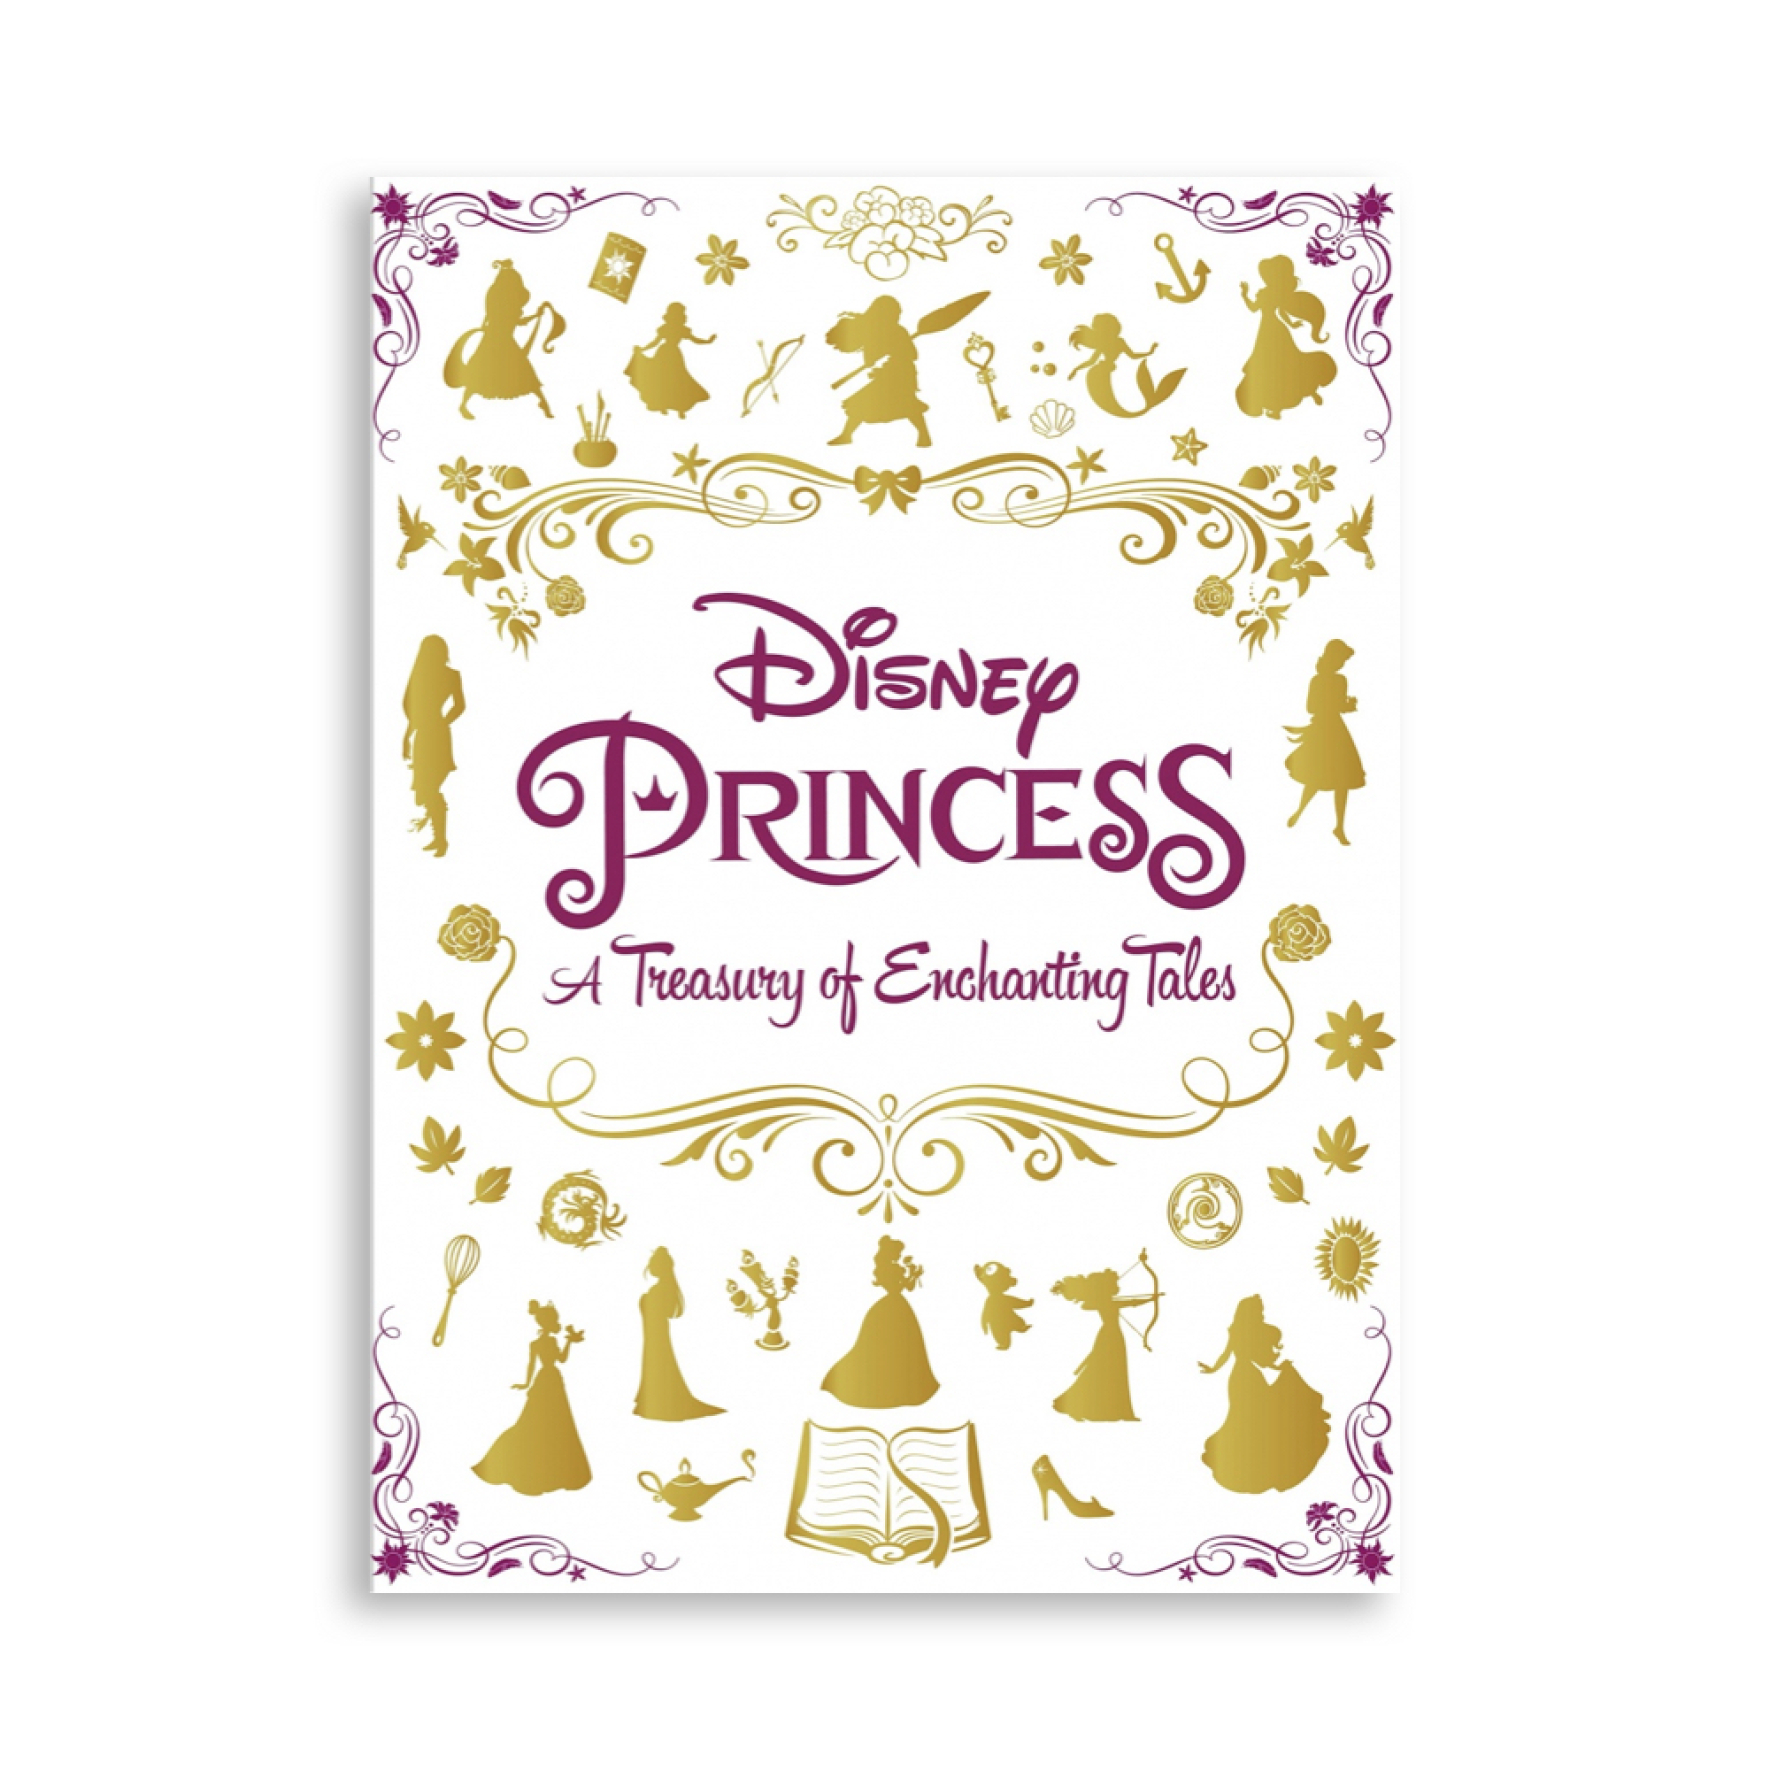  کتاب پرنسس های دیزنی Disney Princess A Treasury of Enchanting Tales 